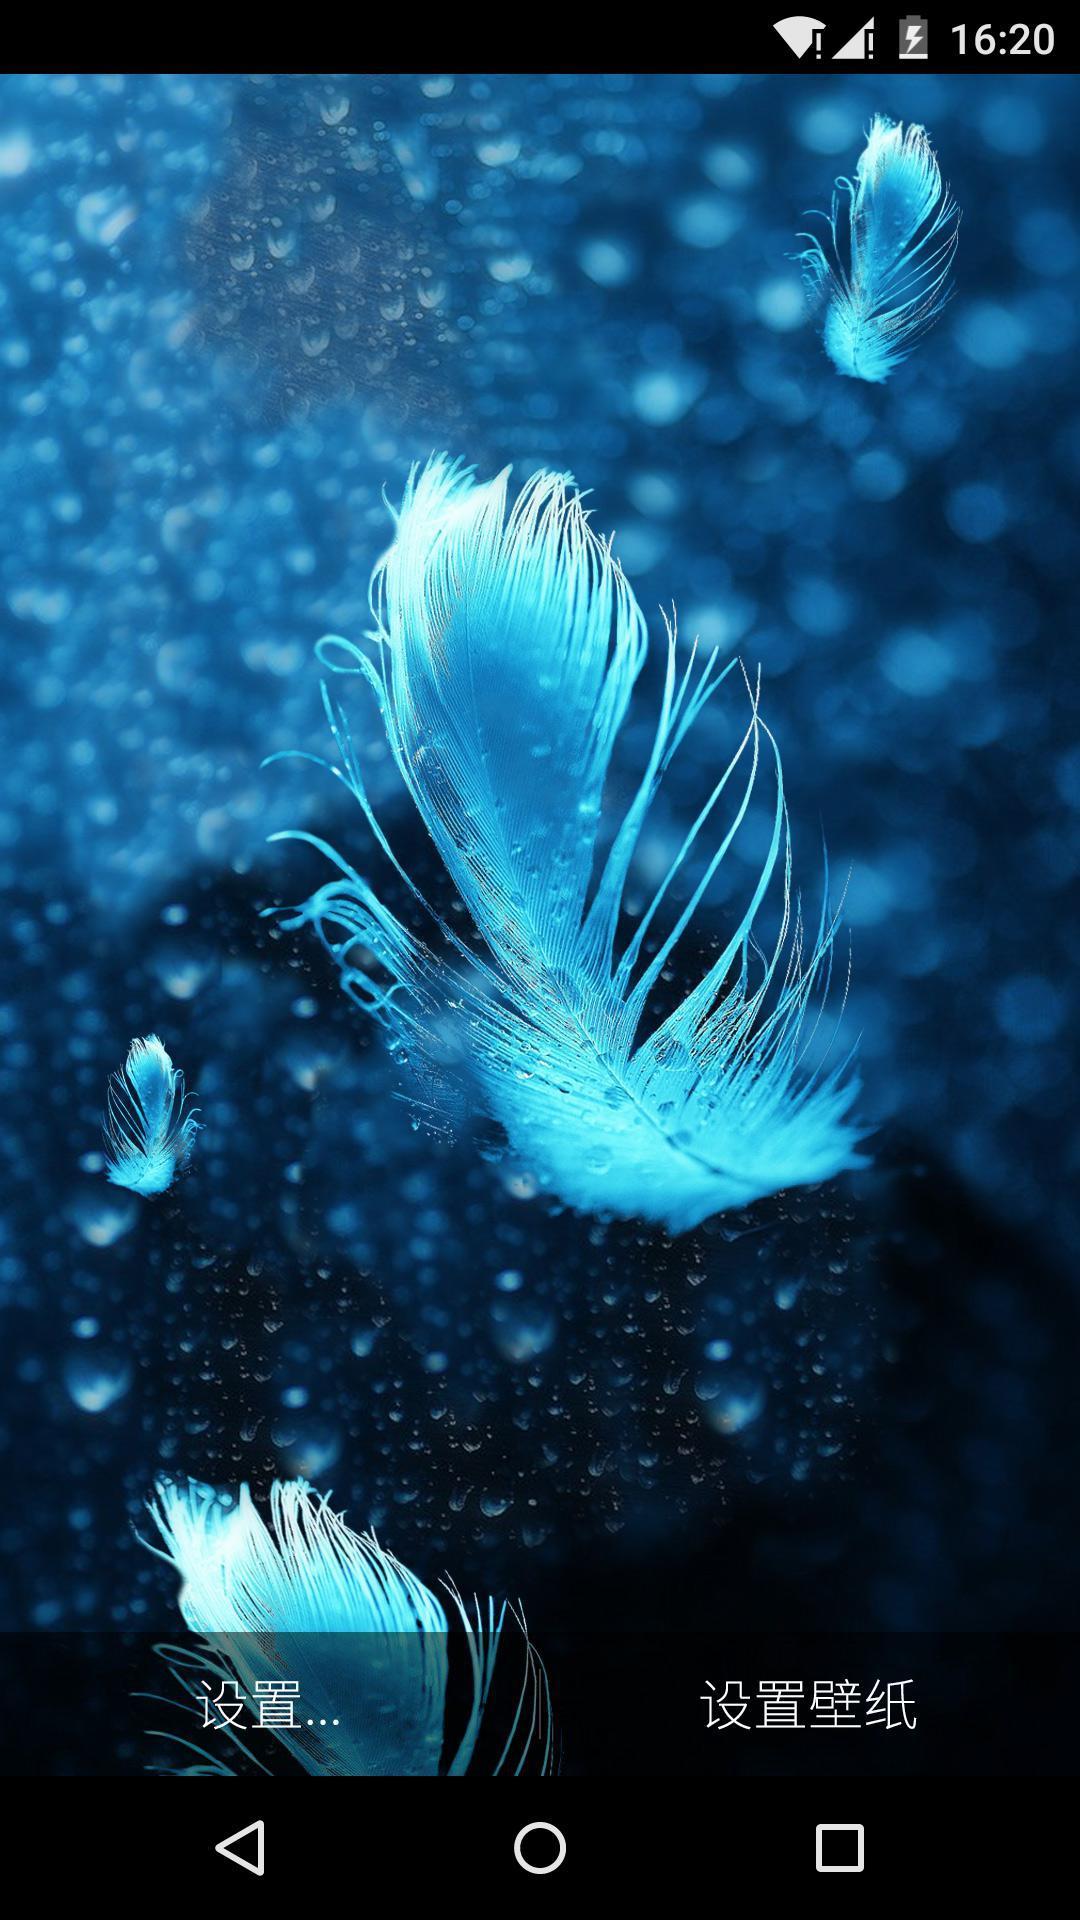 白色羽毛之水晶蓝气泡动态壁纸安卓下载 安卓版apk 免费下载